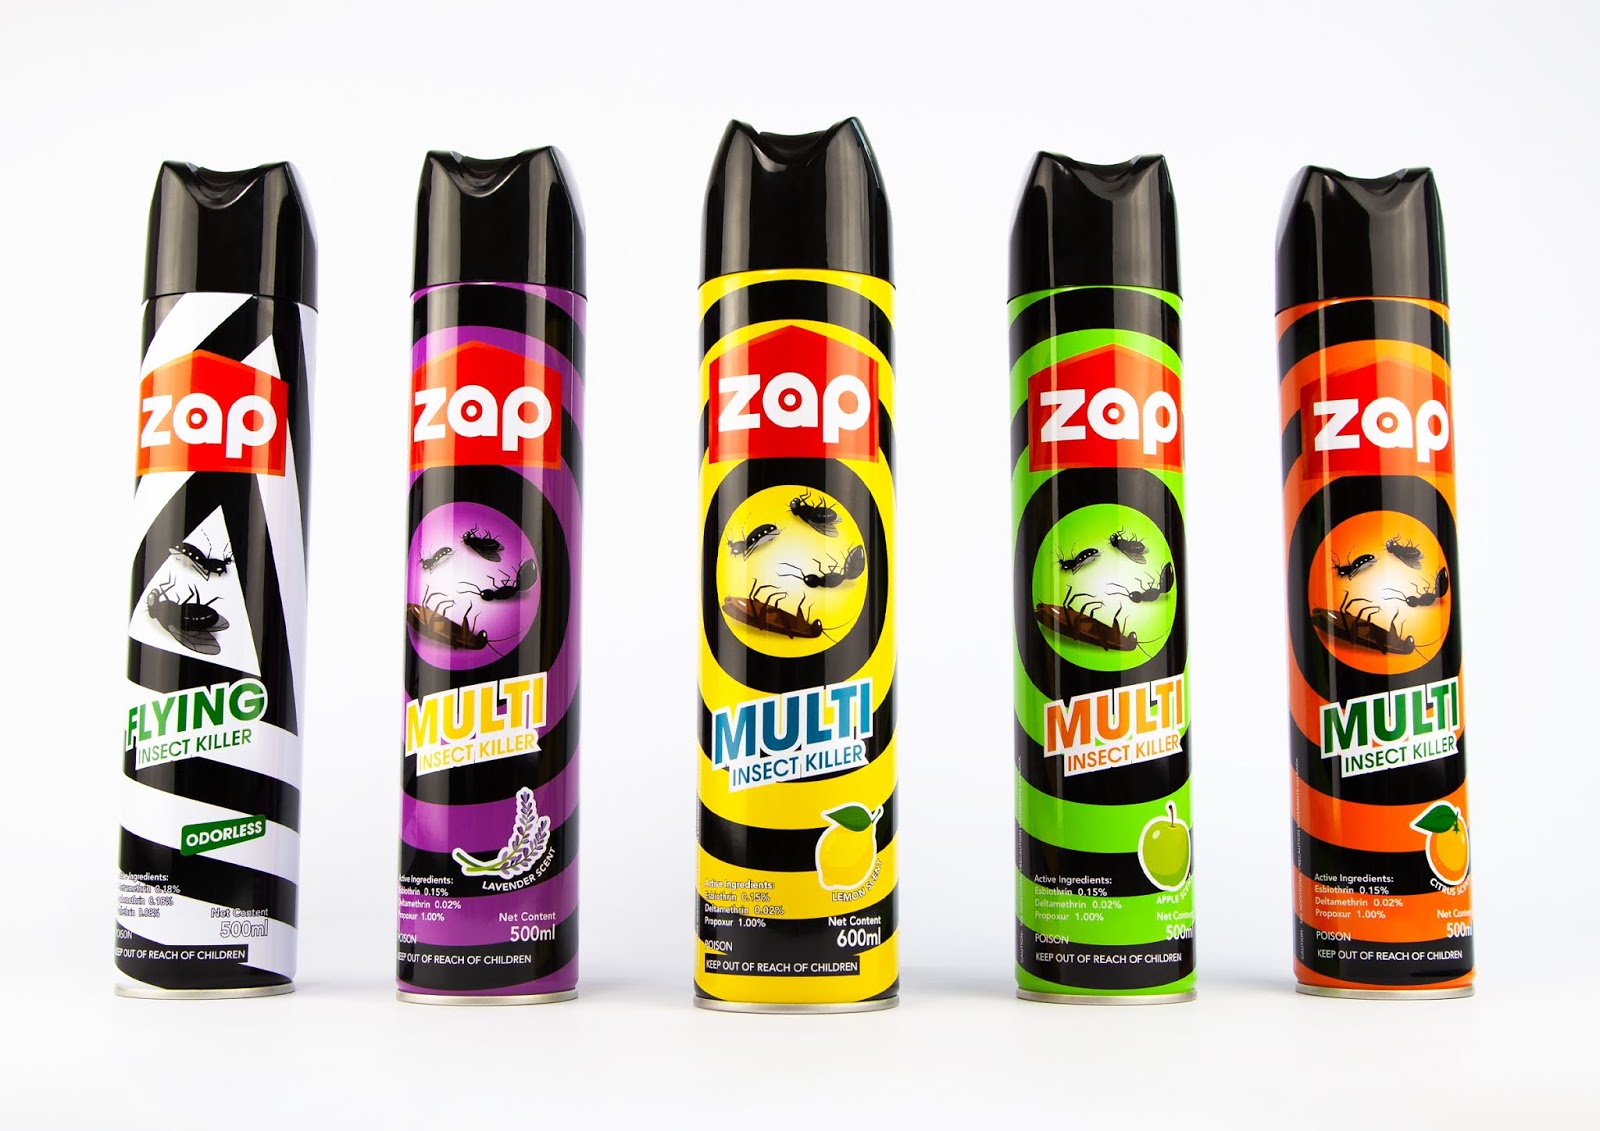 ZAP杀虫剂包装设计